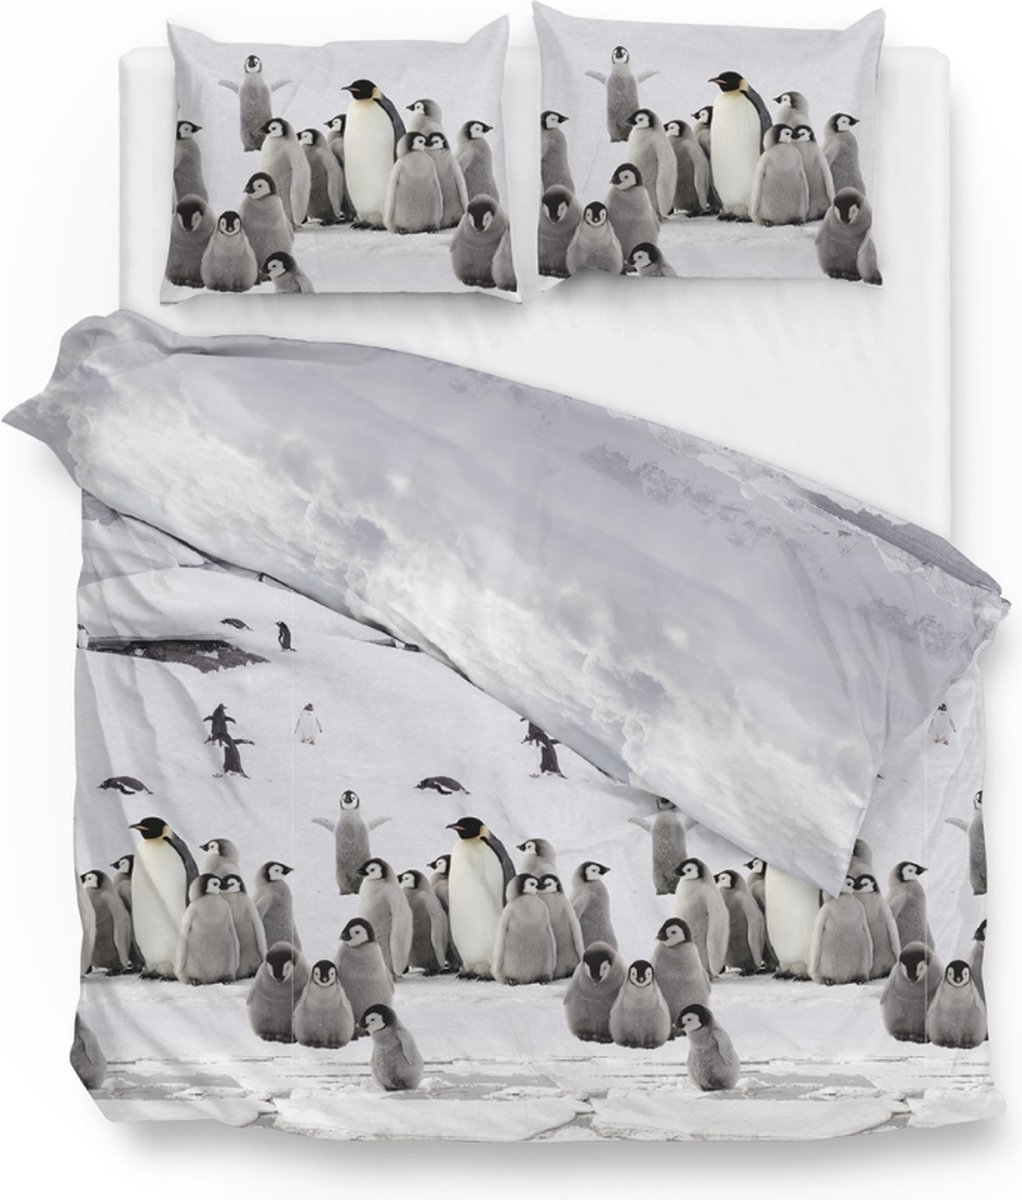 Warme flanel dekbedovertrek Ice Pinguins - lits-jumeaux (240x200/220) - hoogwaardig en zacht - ideaal tegen de kou